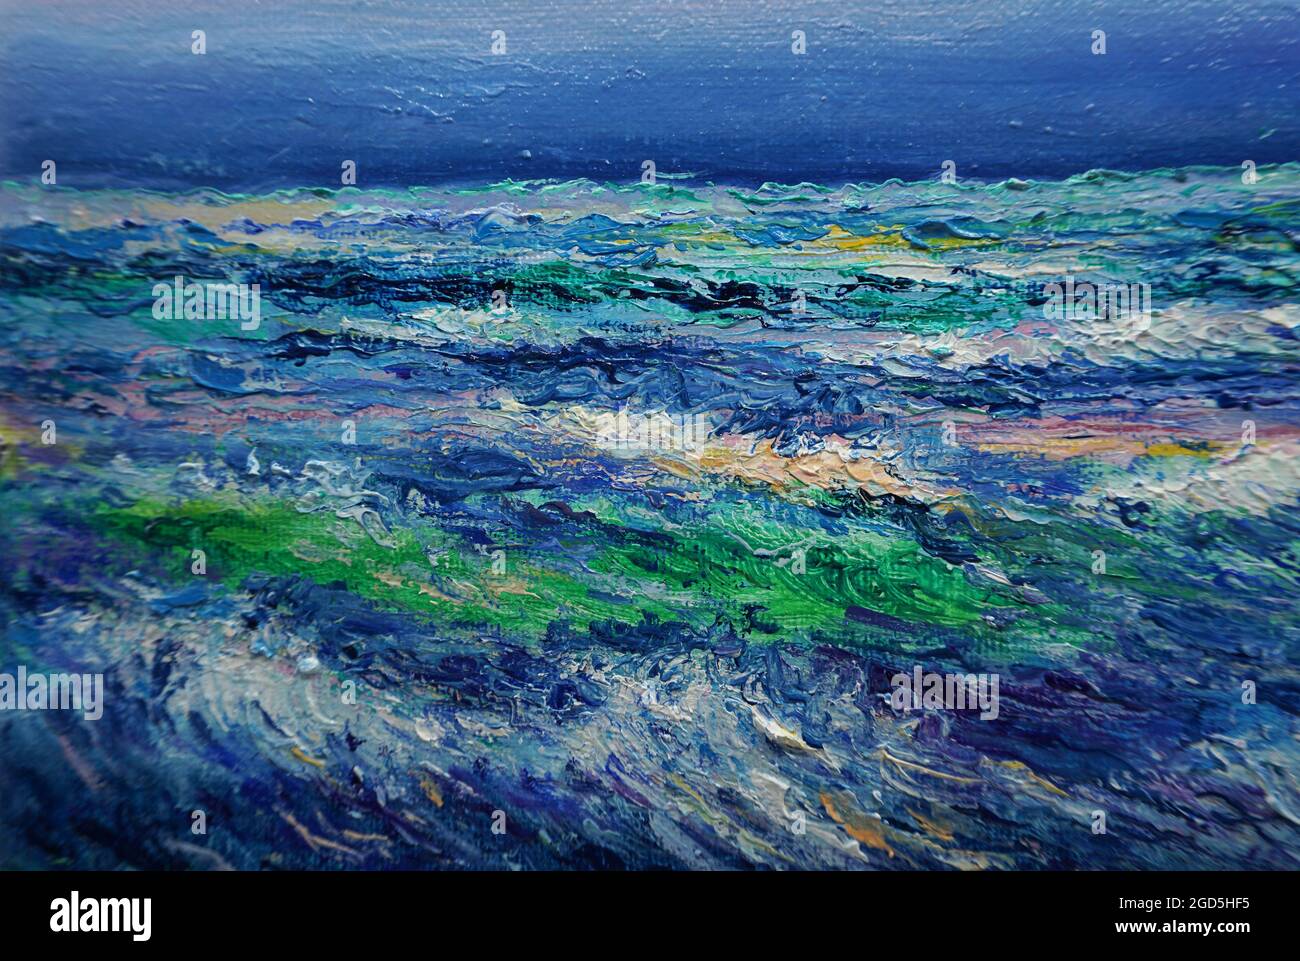 Ölfarbe Malerei Kunst Klasse, Meer, Welle, Hintergründe für Design Stockfoto